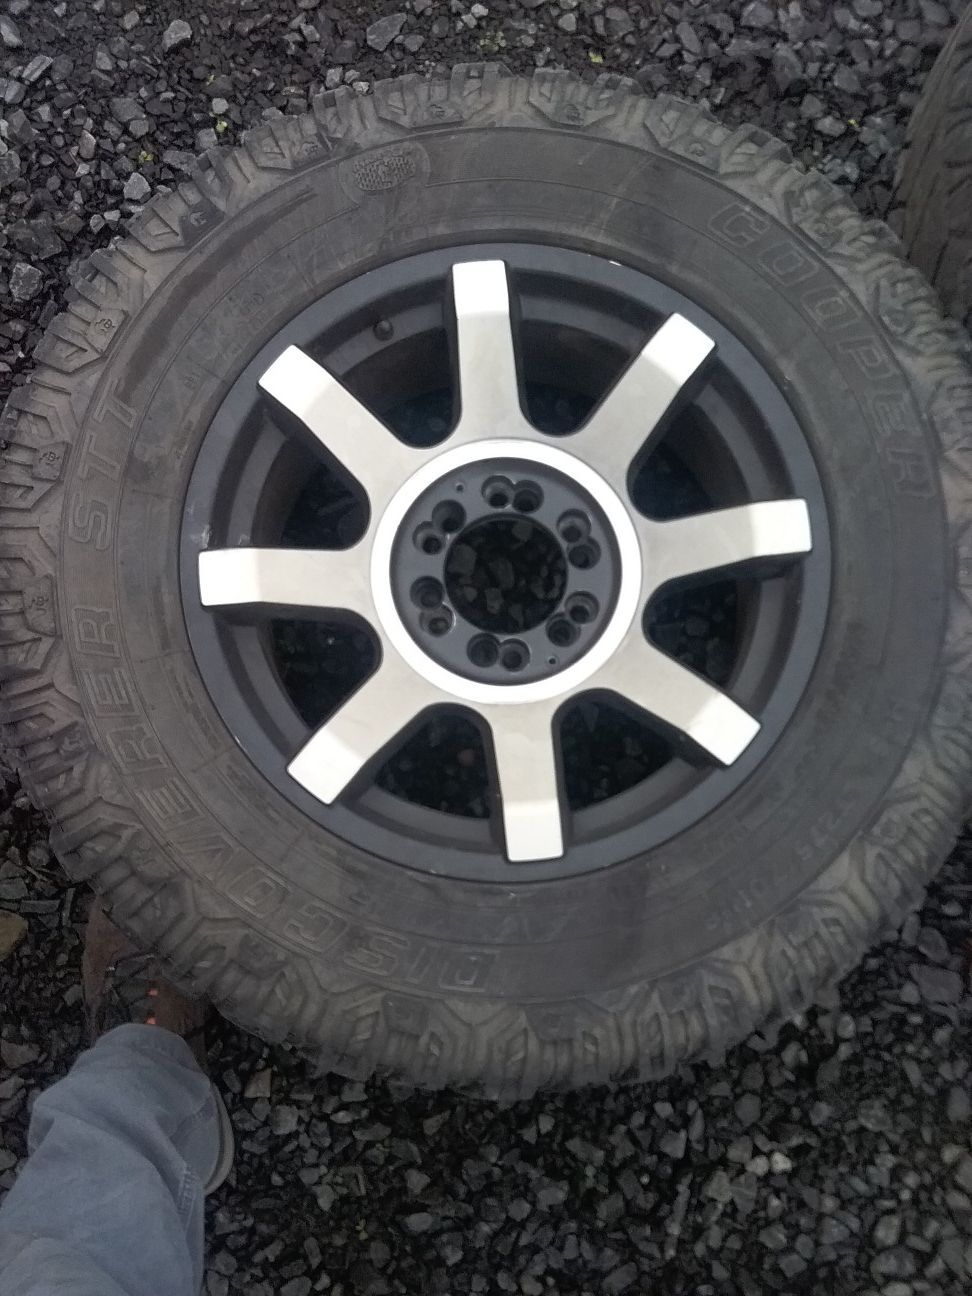 275-70-18 mud tires and rims off silverado